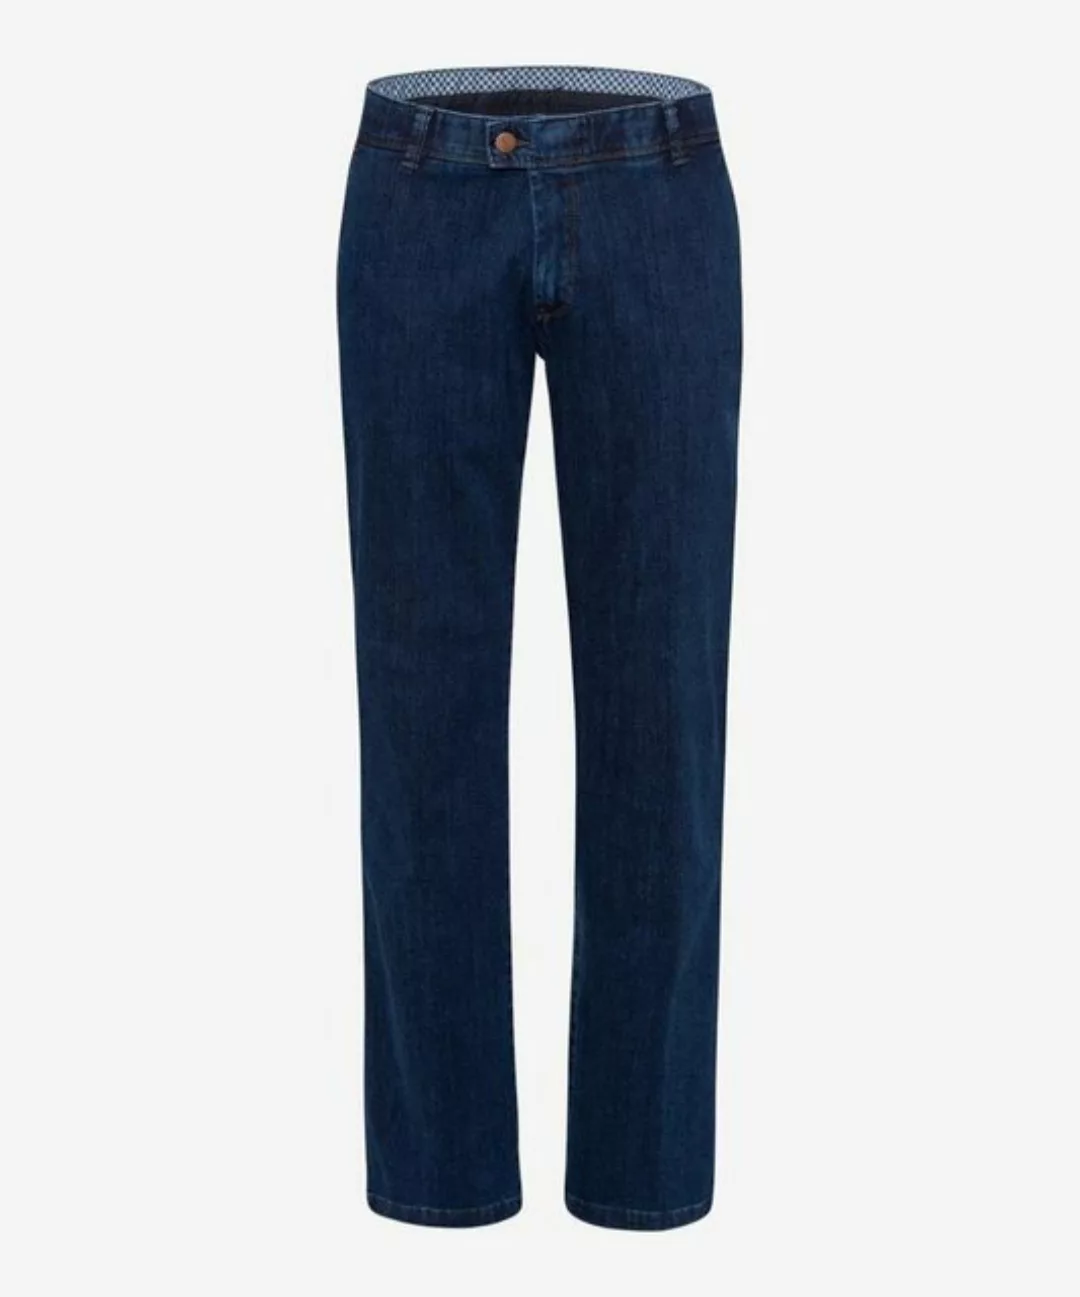 EUREX by BRAX Bequeme Jeans Style JIM 316 günstig online kaufen